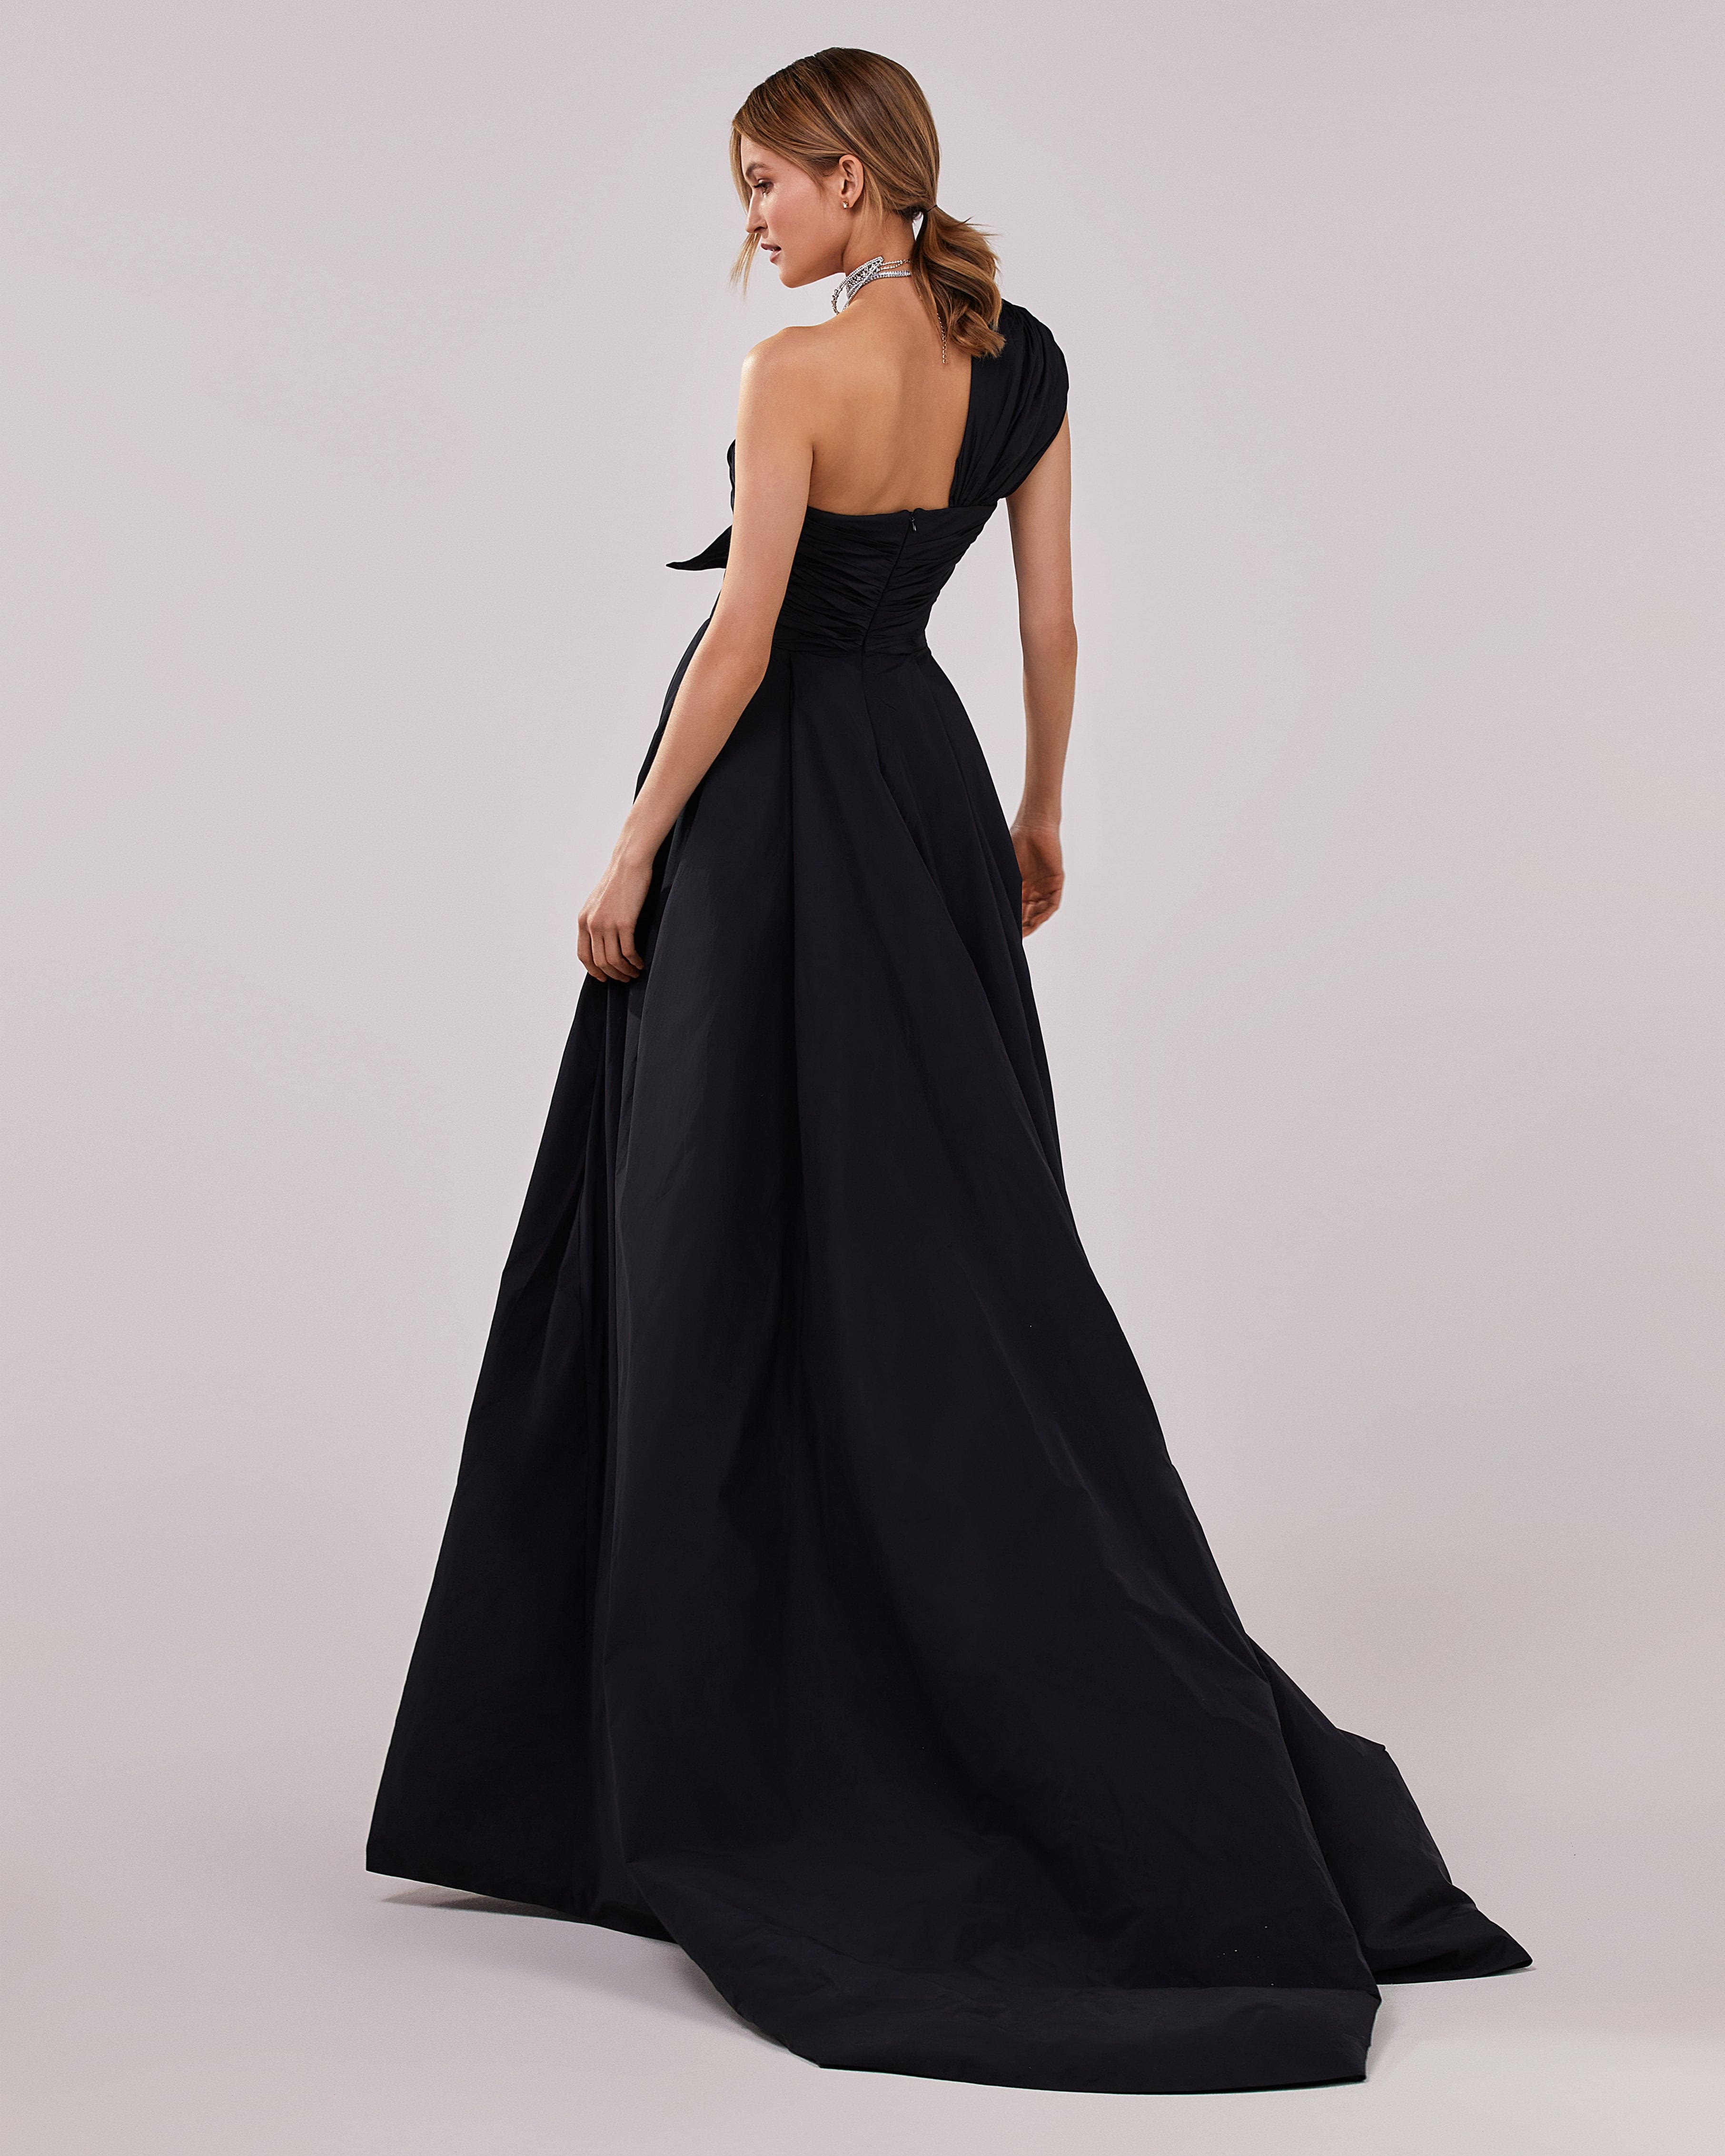 فستان سهرة أسود من قماش التفتا مع فتحة عالية وجزء علوي ملفوف بكتف واحد